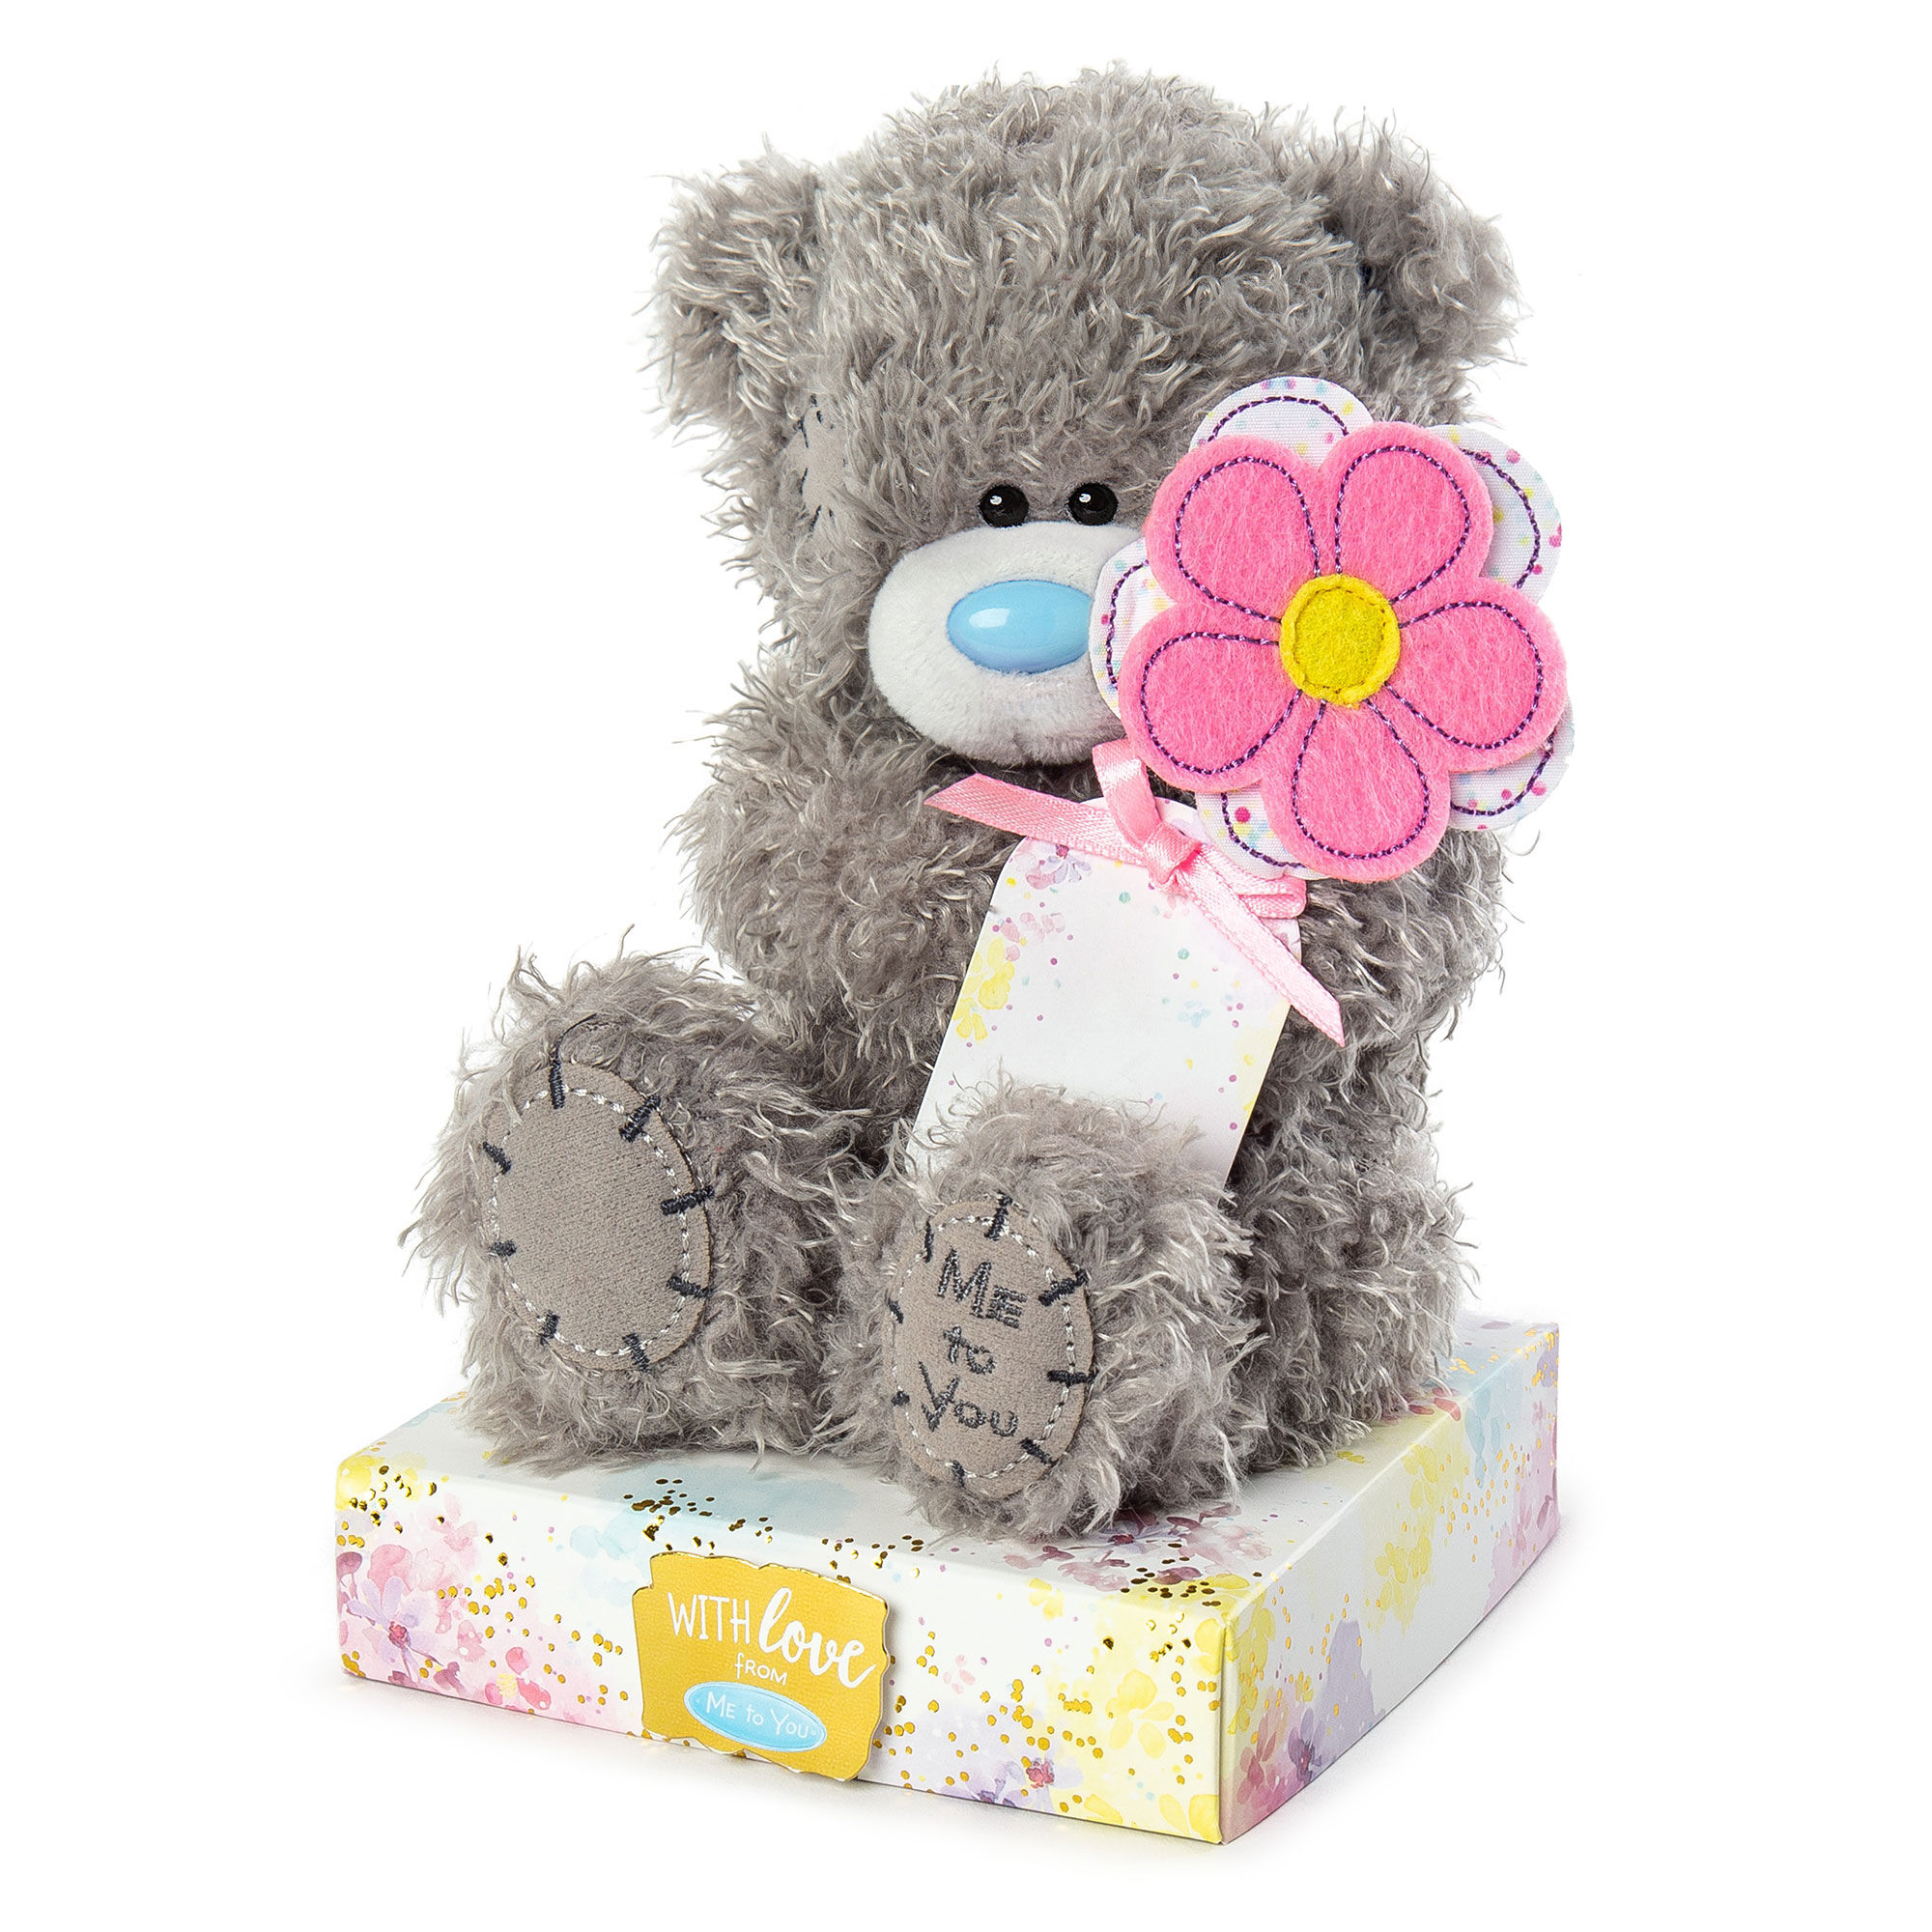 Cuddly Soft 8 inch Stuffed Monkey...We stuff 'em...you love 'em! Bear Factory 